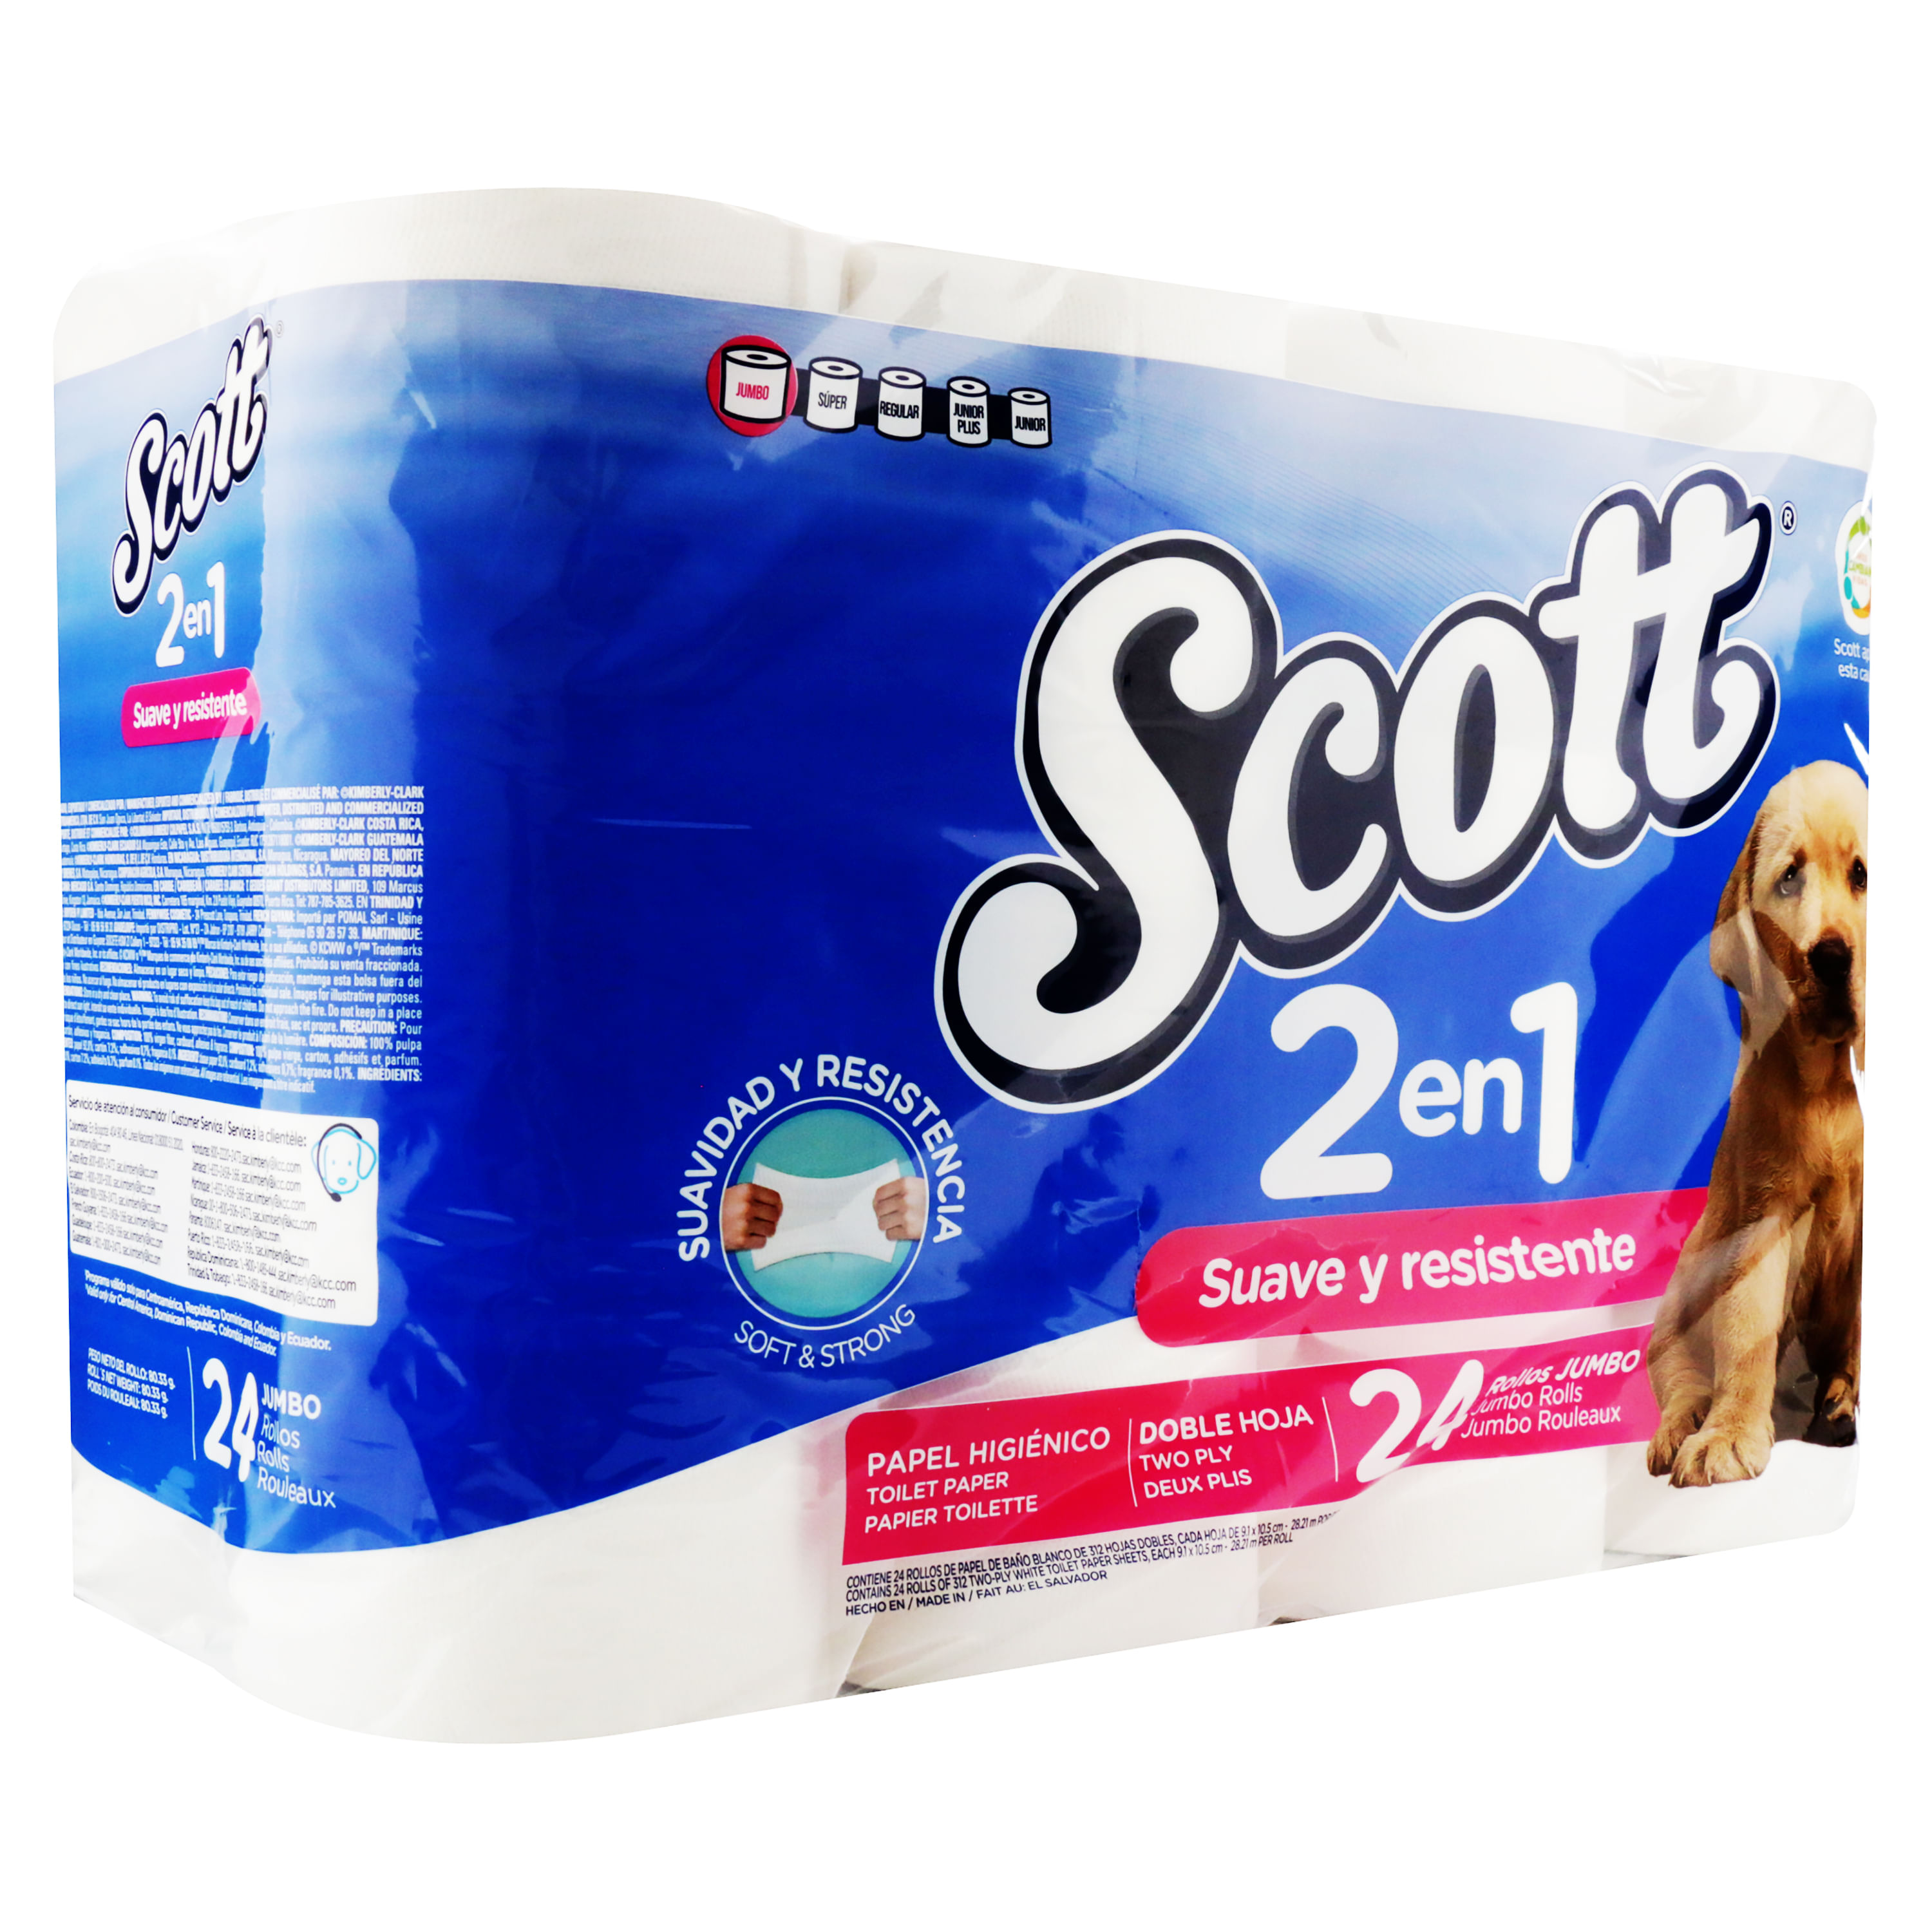 Scottex dona más de 200 kilómetros de papel higiénico